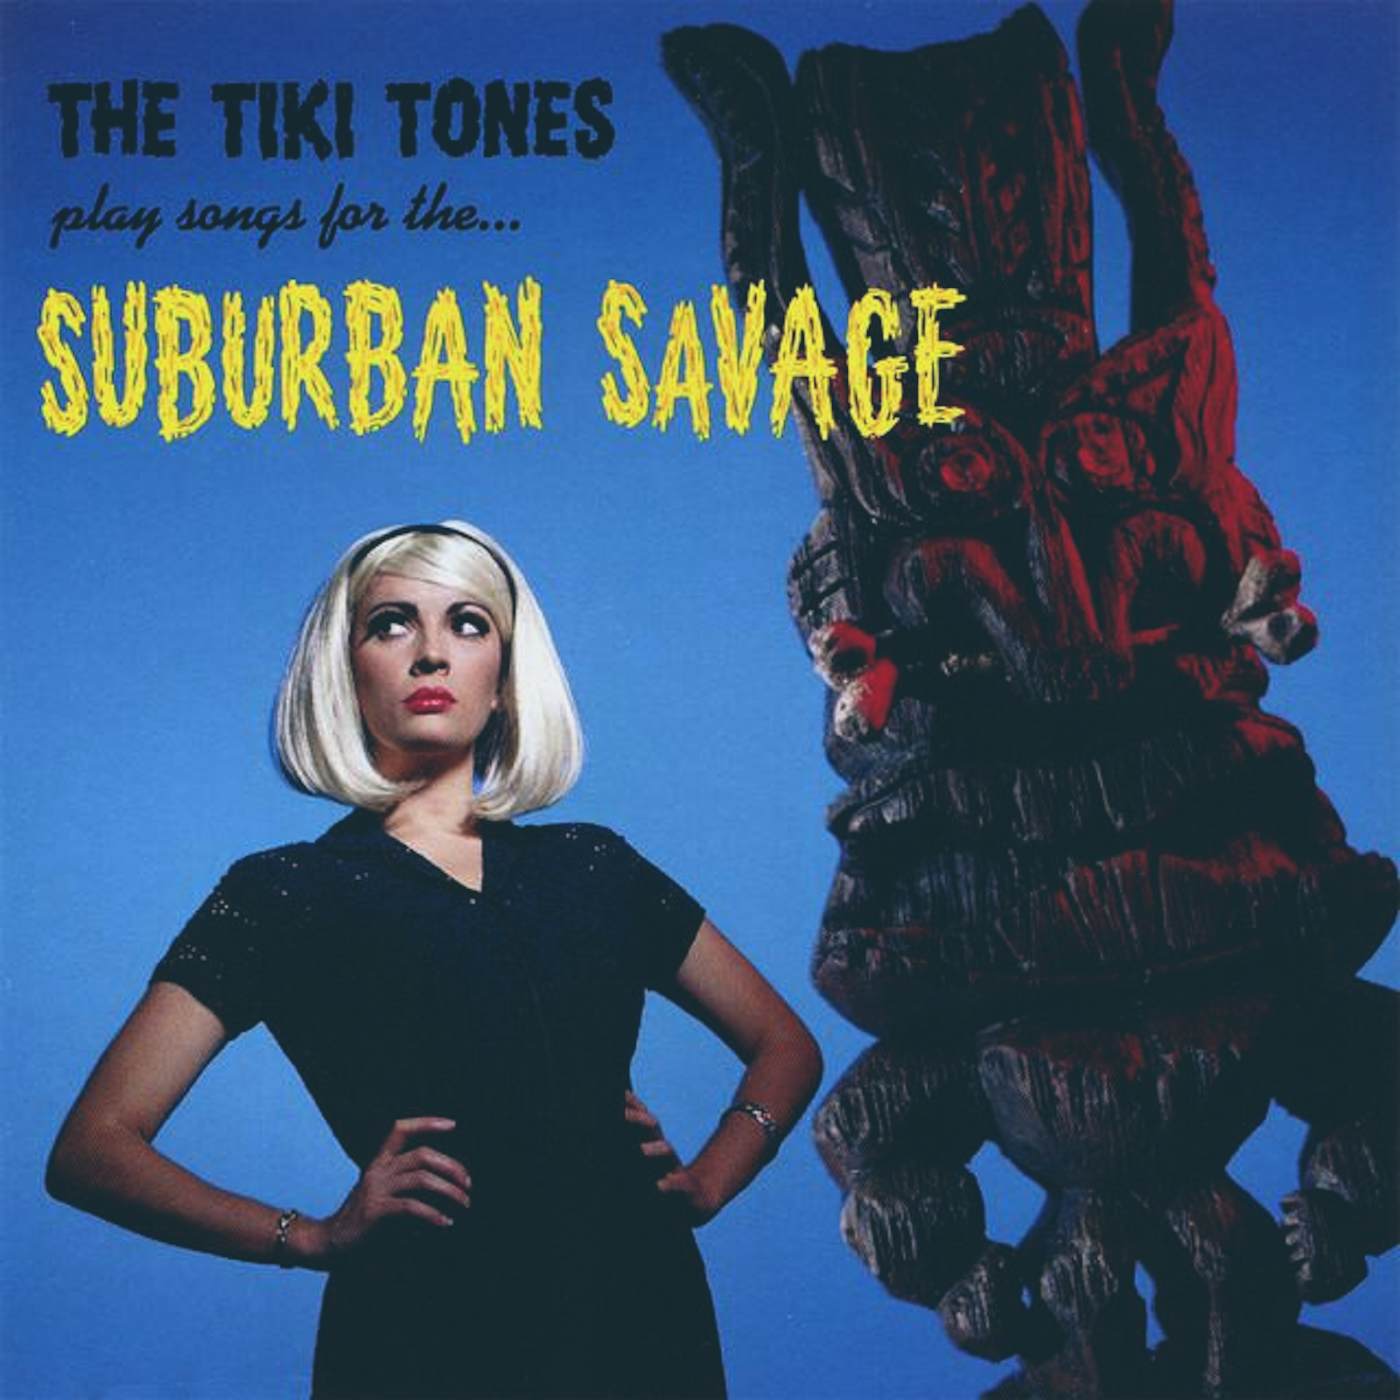 The Tiki Tones